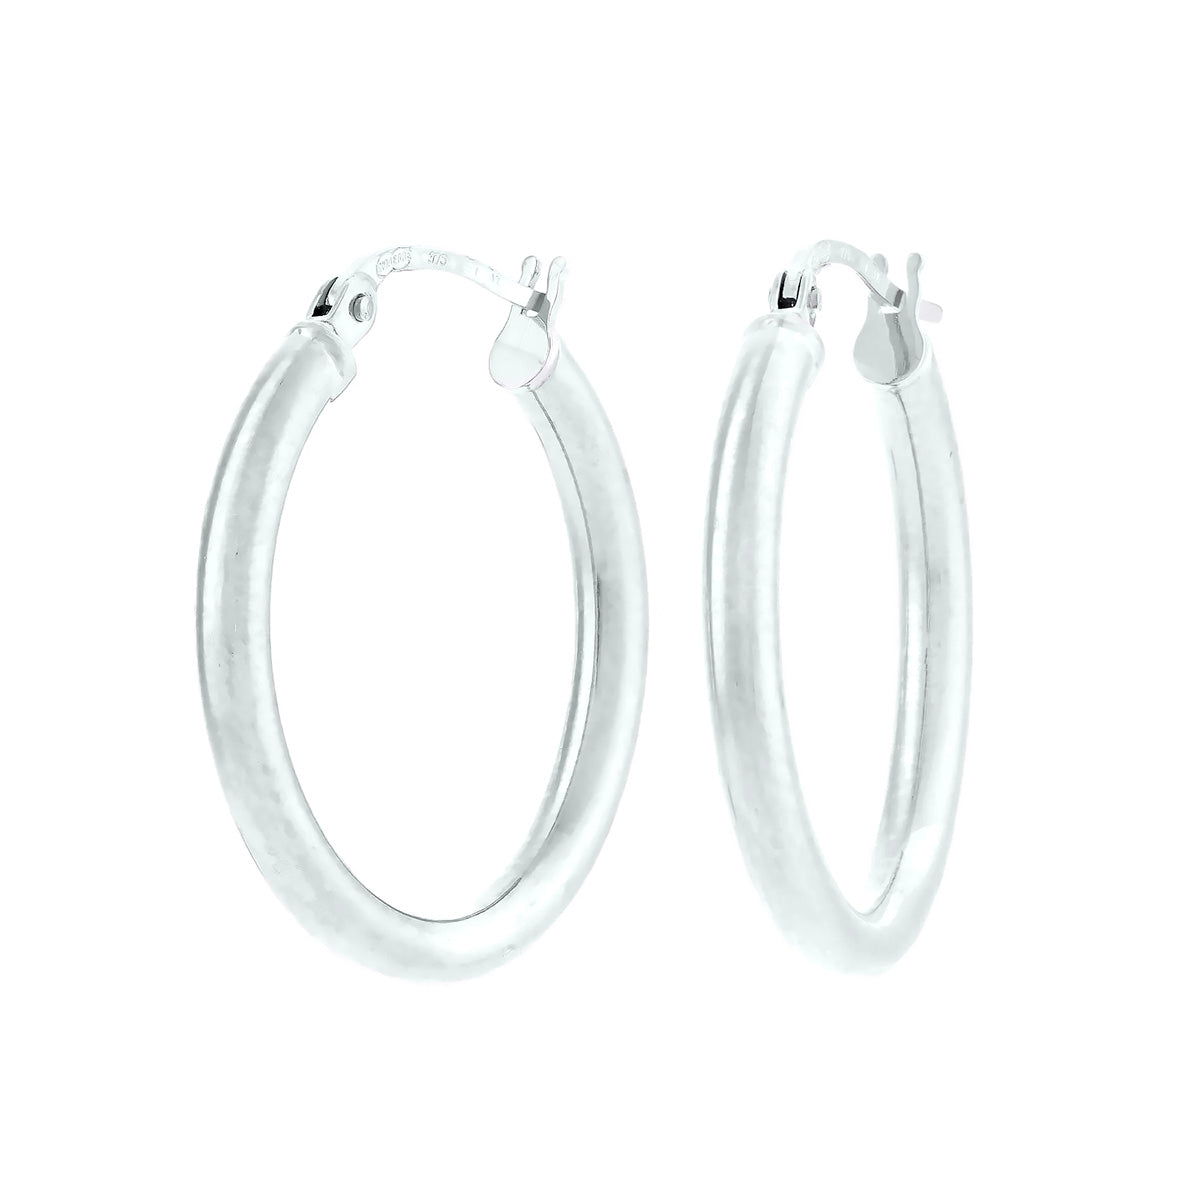 9K White Gold Plain Oval Hoop Earrings